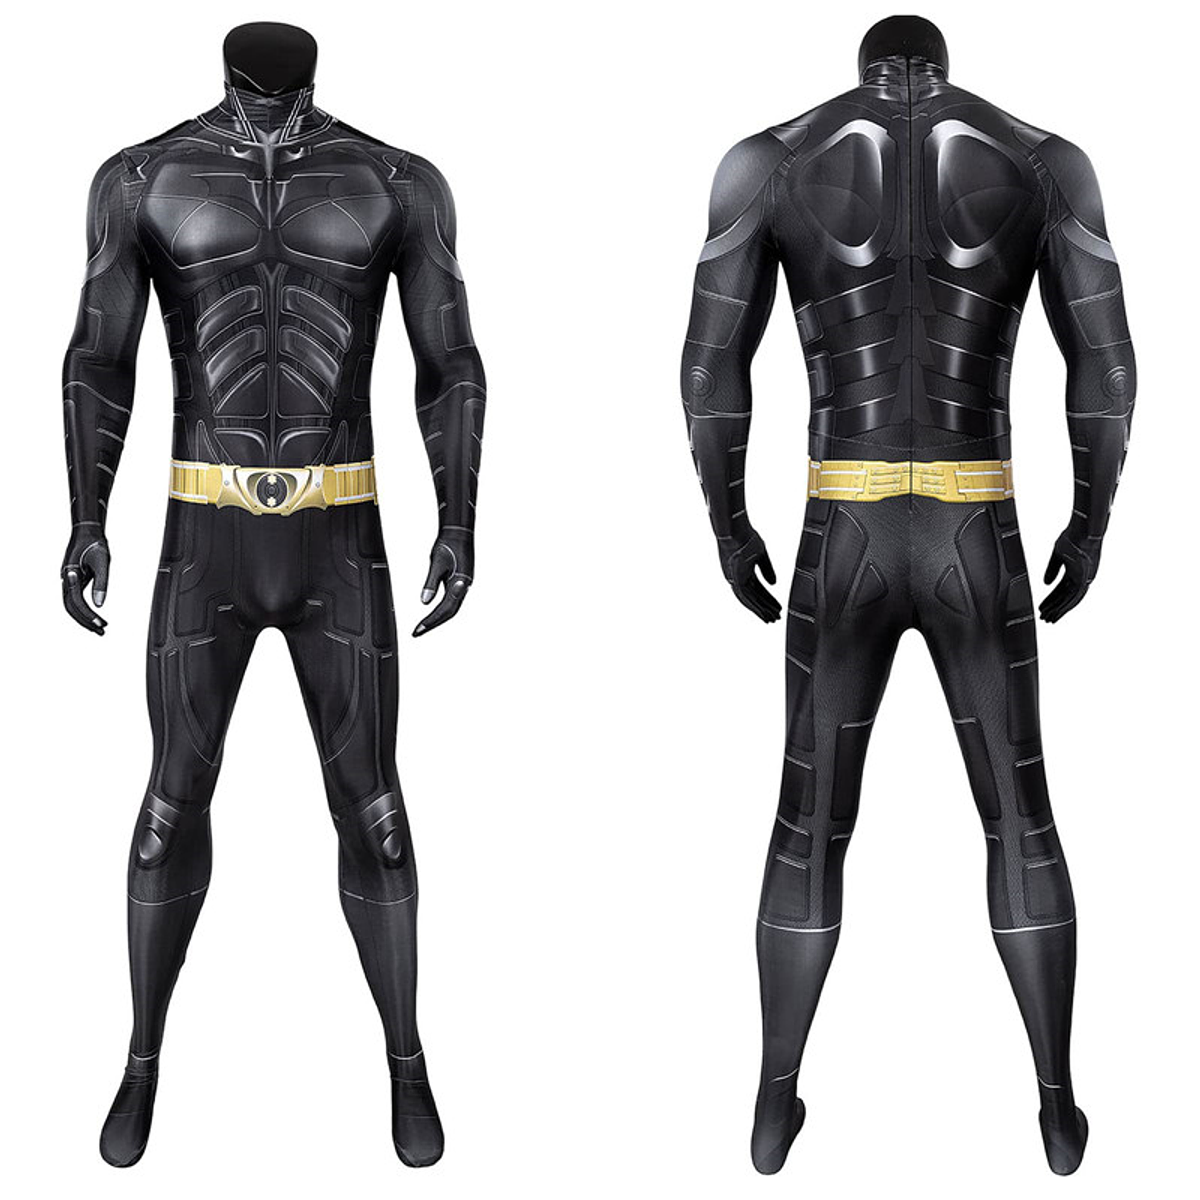 Exclusivo Disfraz de Batman completo para adultos de Bruc...